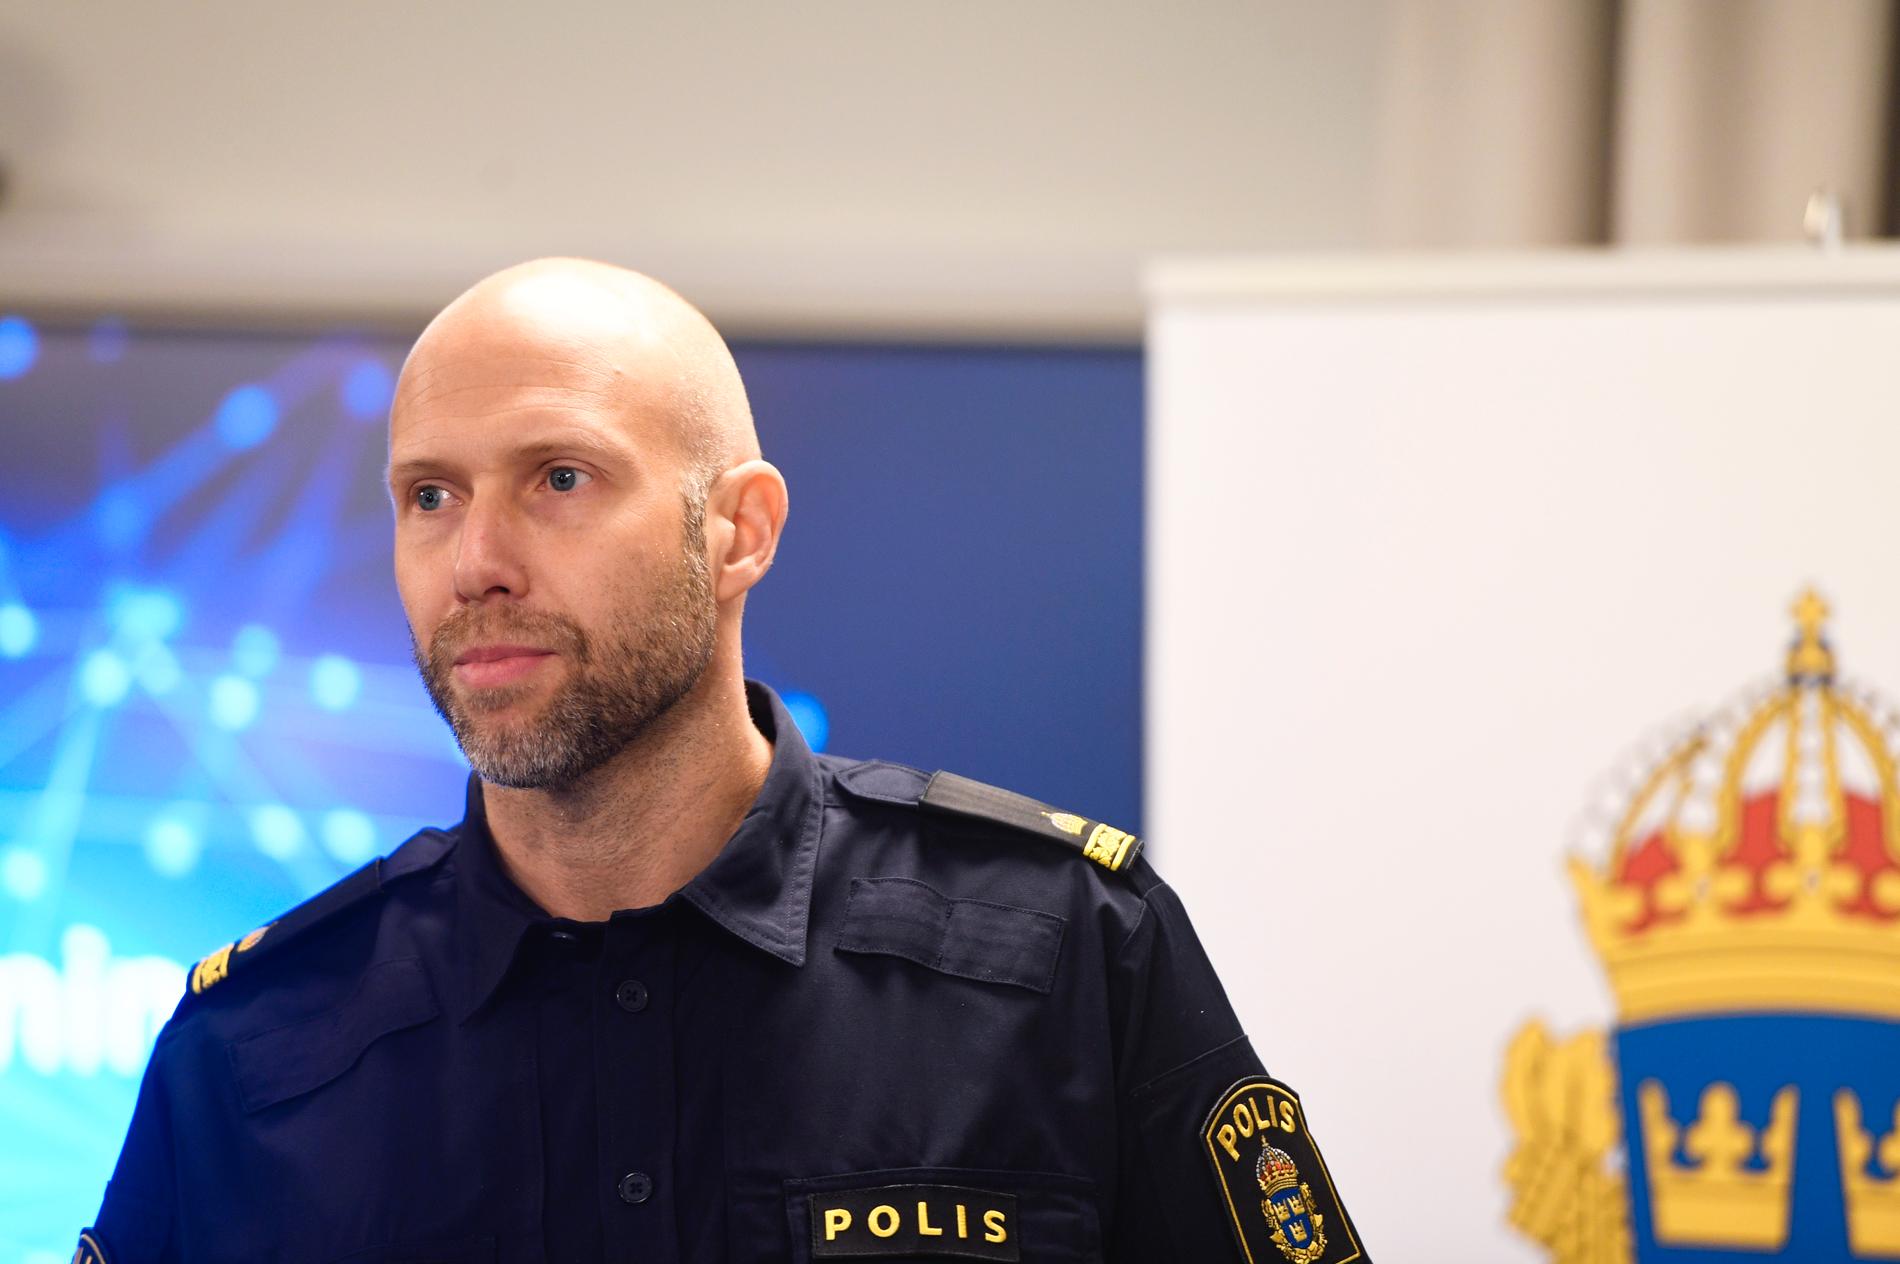 Inte ens på Darknet kan brottslingar vara säkra, enligt kriminalinspektör Björn Eriksson. Nu inleds rättegången mot en man från Lund som misstänks har administrerat droghandelsajten Flugsvamp 2.0. Arkivbild.